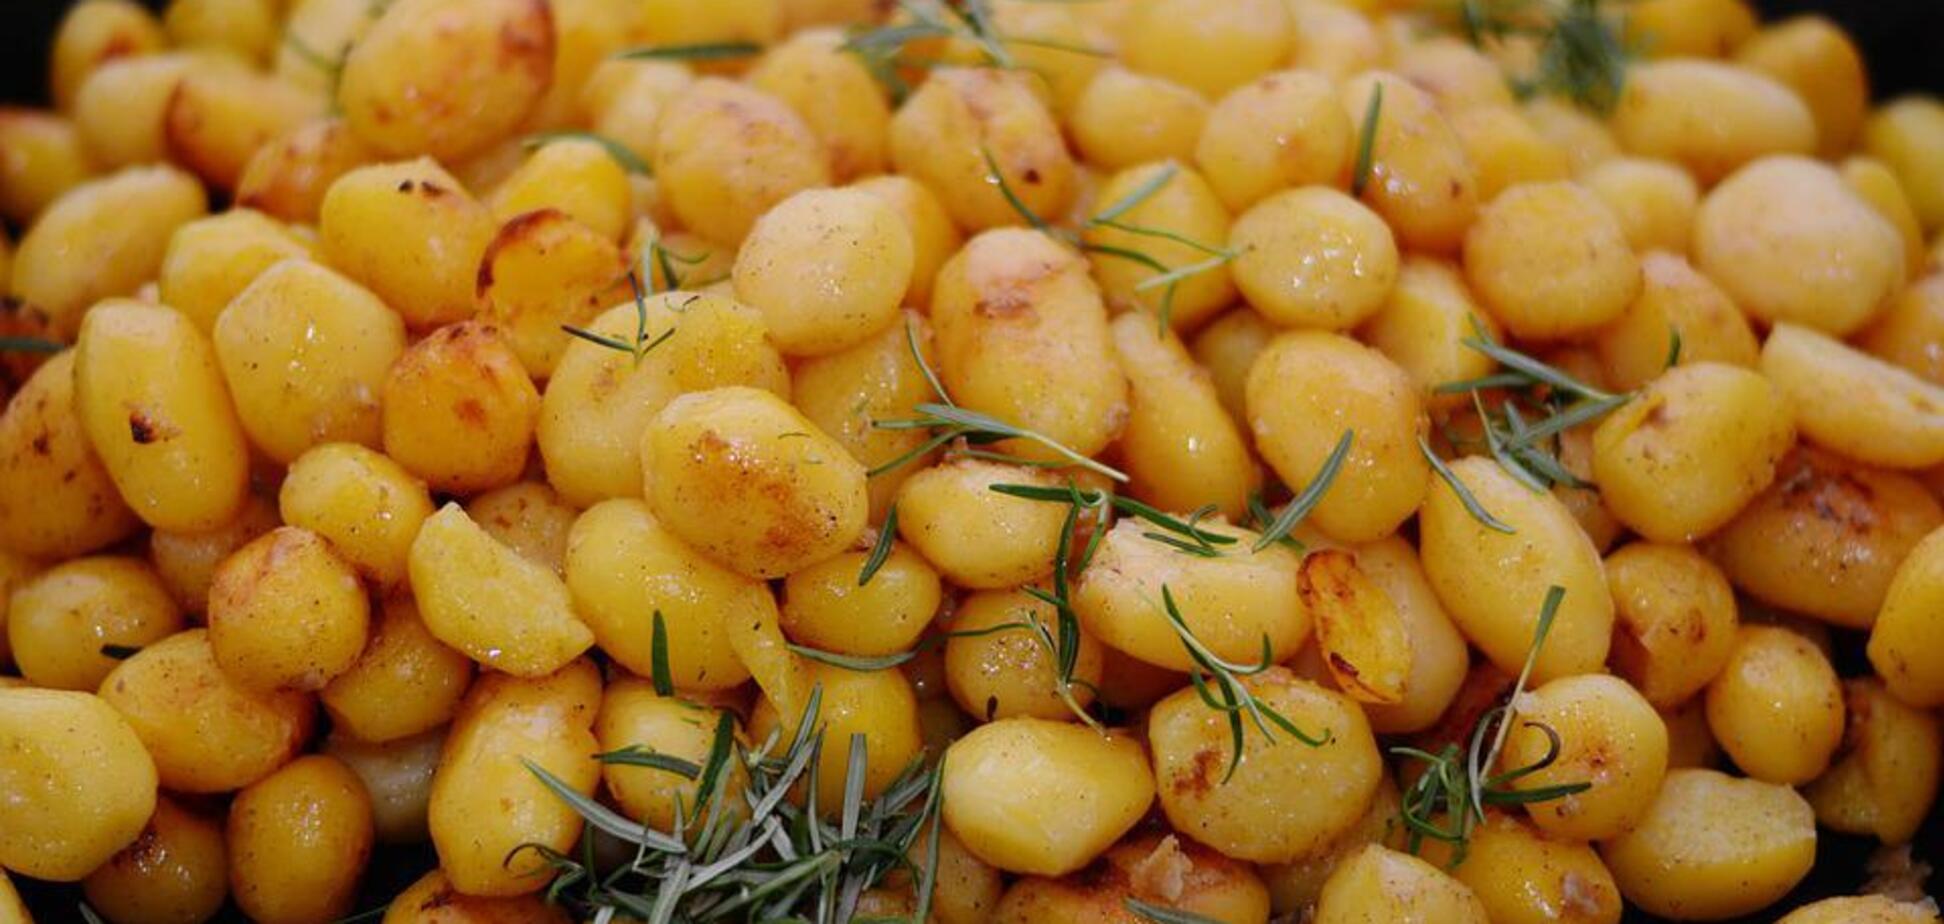 Як смачно посмажити картоплю цілою: виходить дуже хрусткою і золотистою